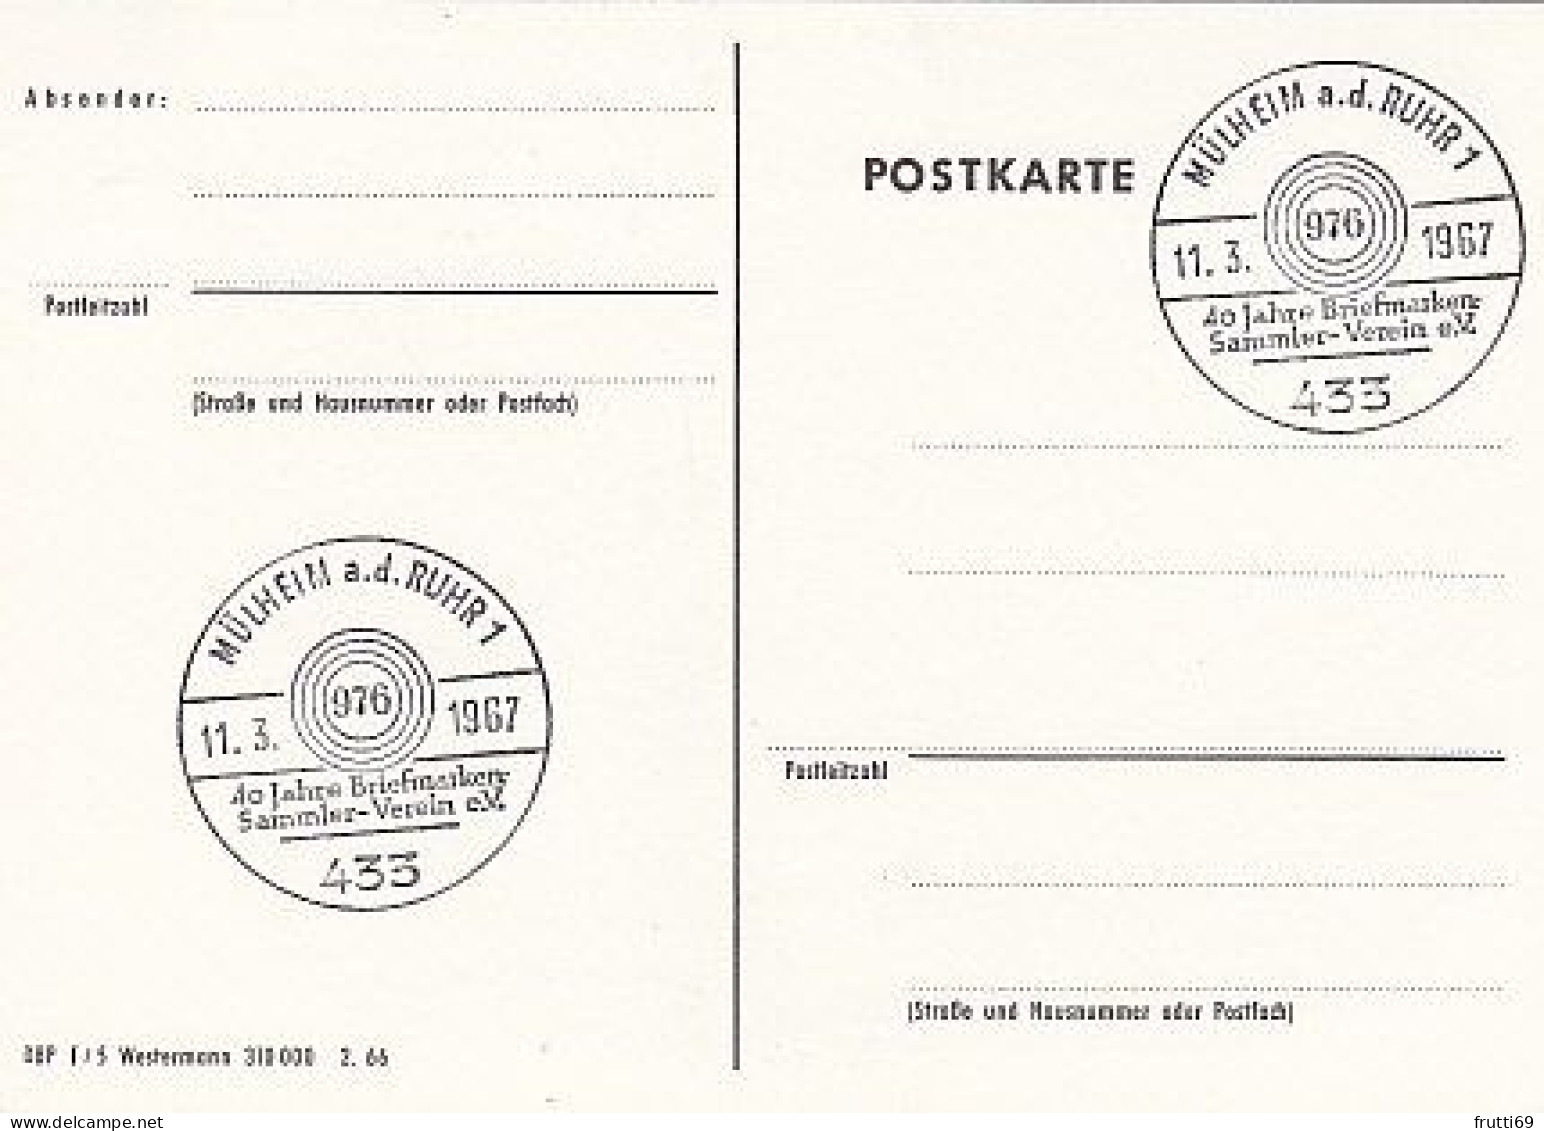 AK 216118 POST - Postbeamter Und Postillion Der Großherzoglich Baden'schen Post 1850 - Post & Briefboten